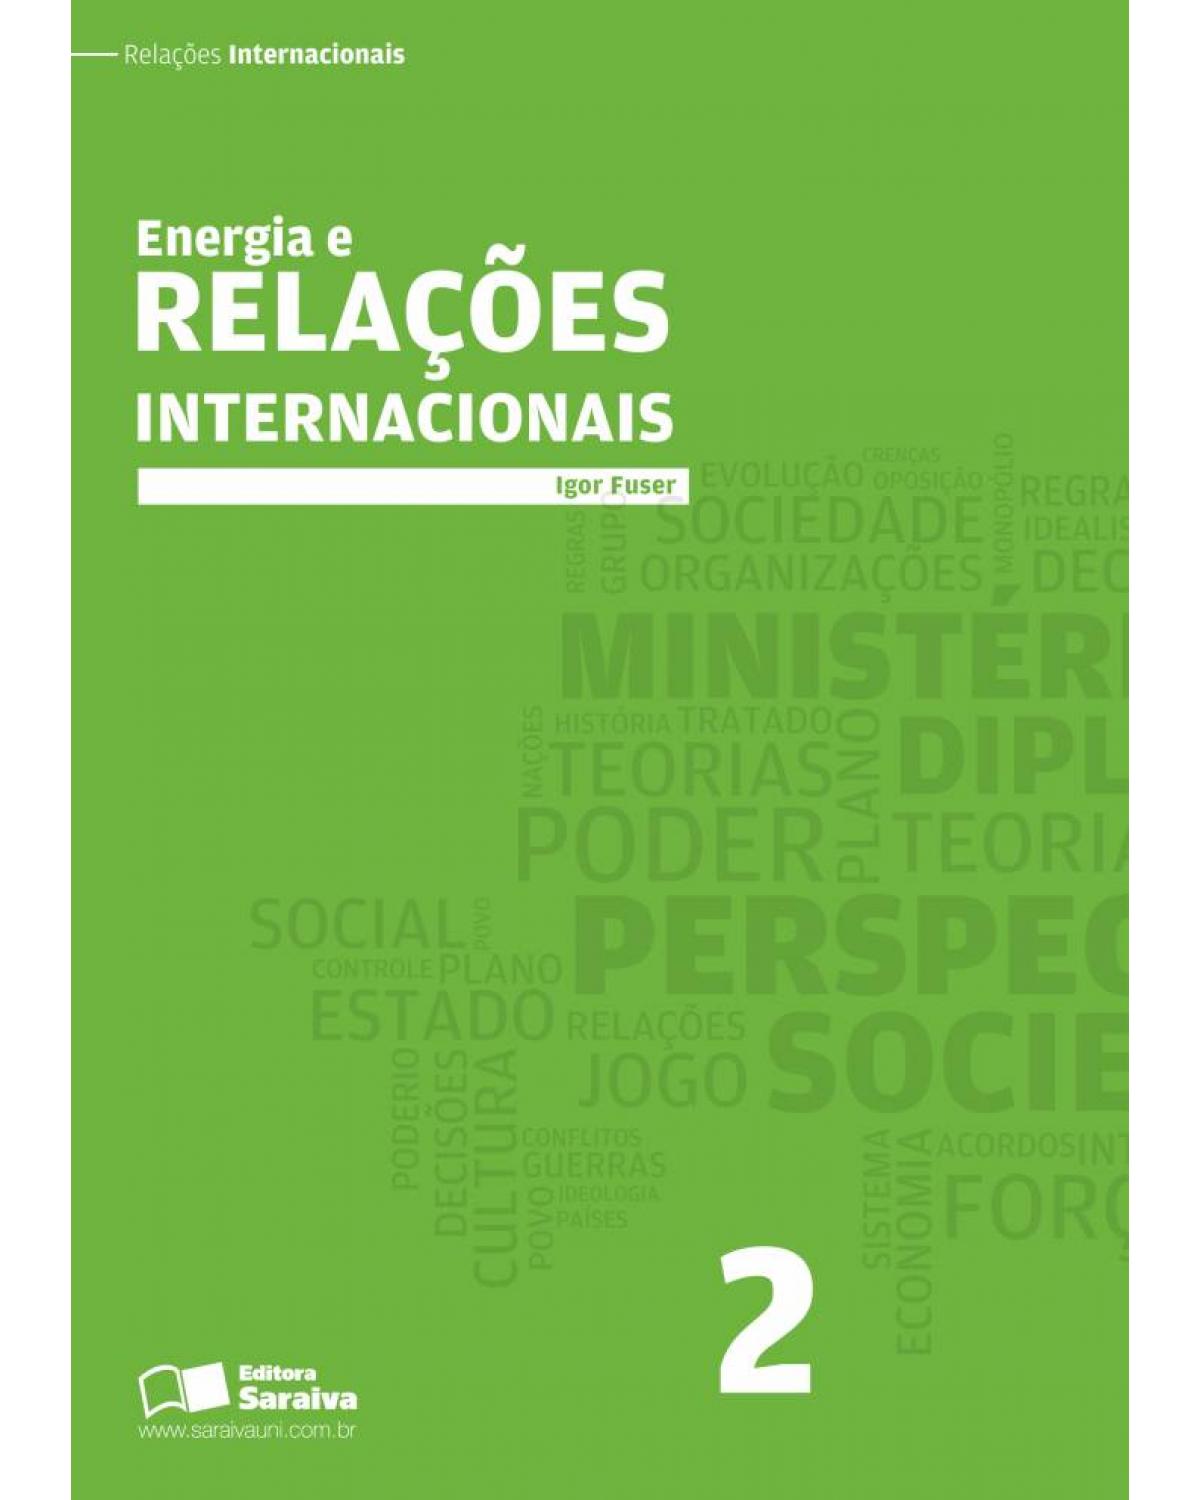 Energia e relações internacionais - Volume 2:  - 1ª Edição | 2013